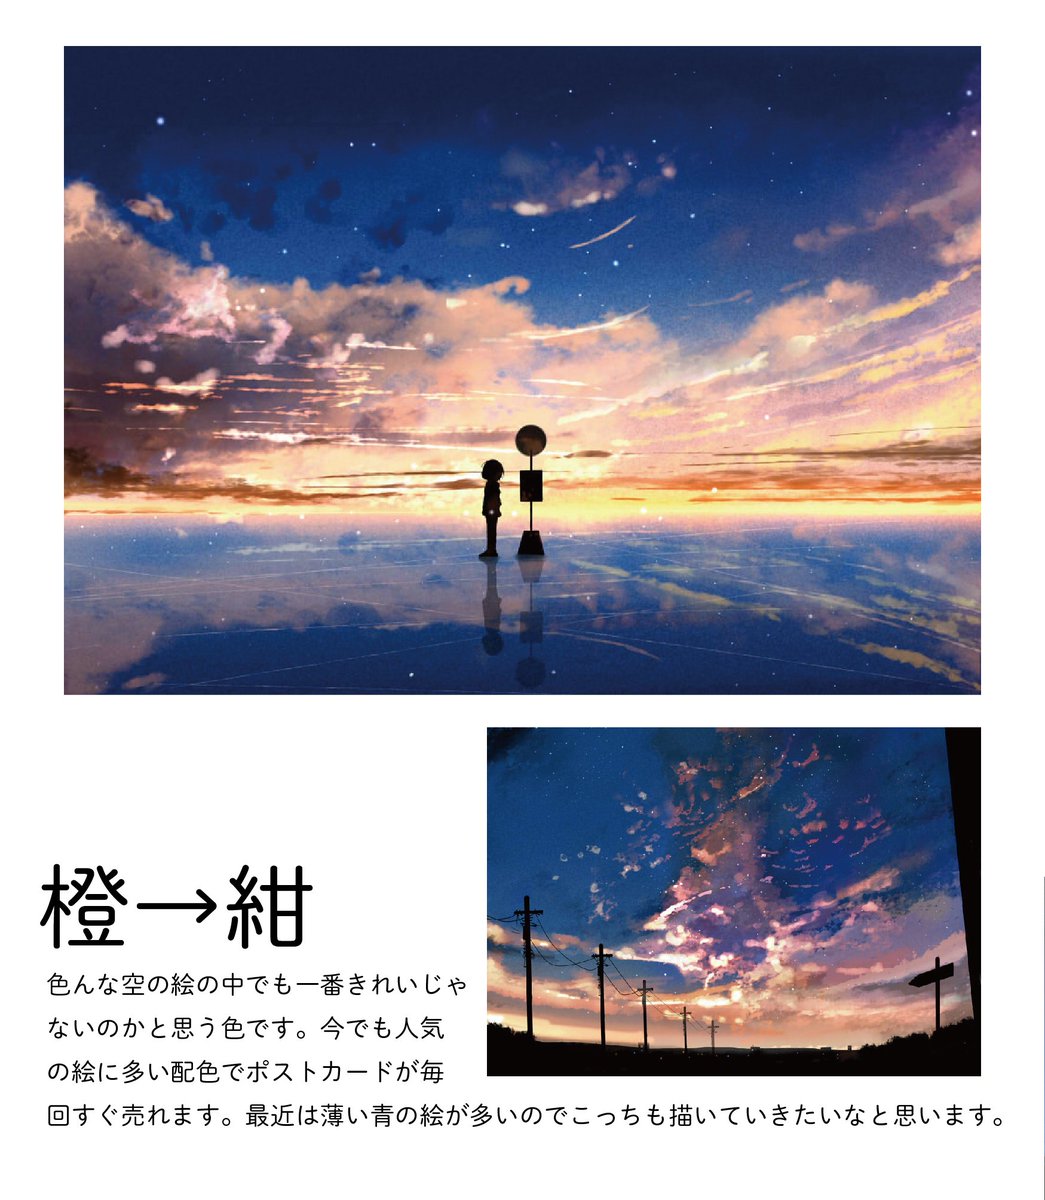 桜田千尋 10月1日レシピ本発売 Auf Twitter 自分の夕焼けのイラストを色ごとに分けてみました 夕焼けイラストは変化する空 のグラデーション作るのが楽しいです 好きな空の色 ありますか 今後のグッズなどの参考にします